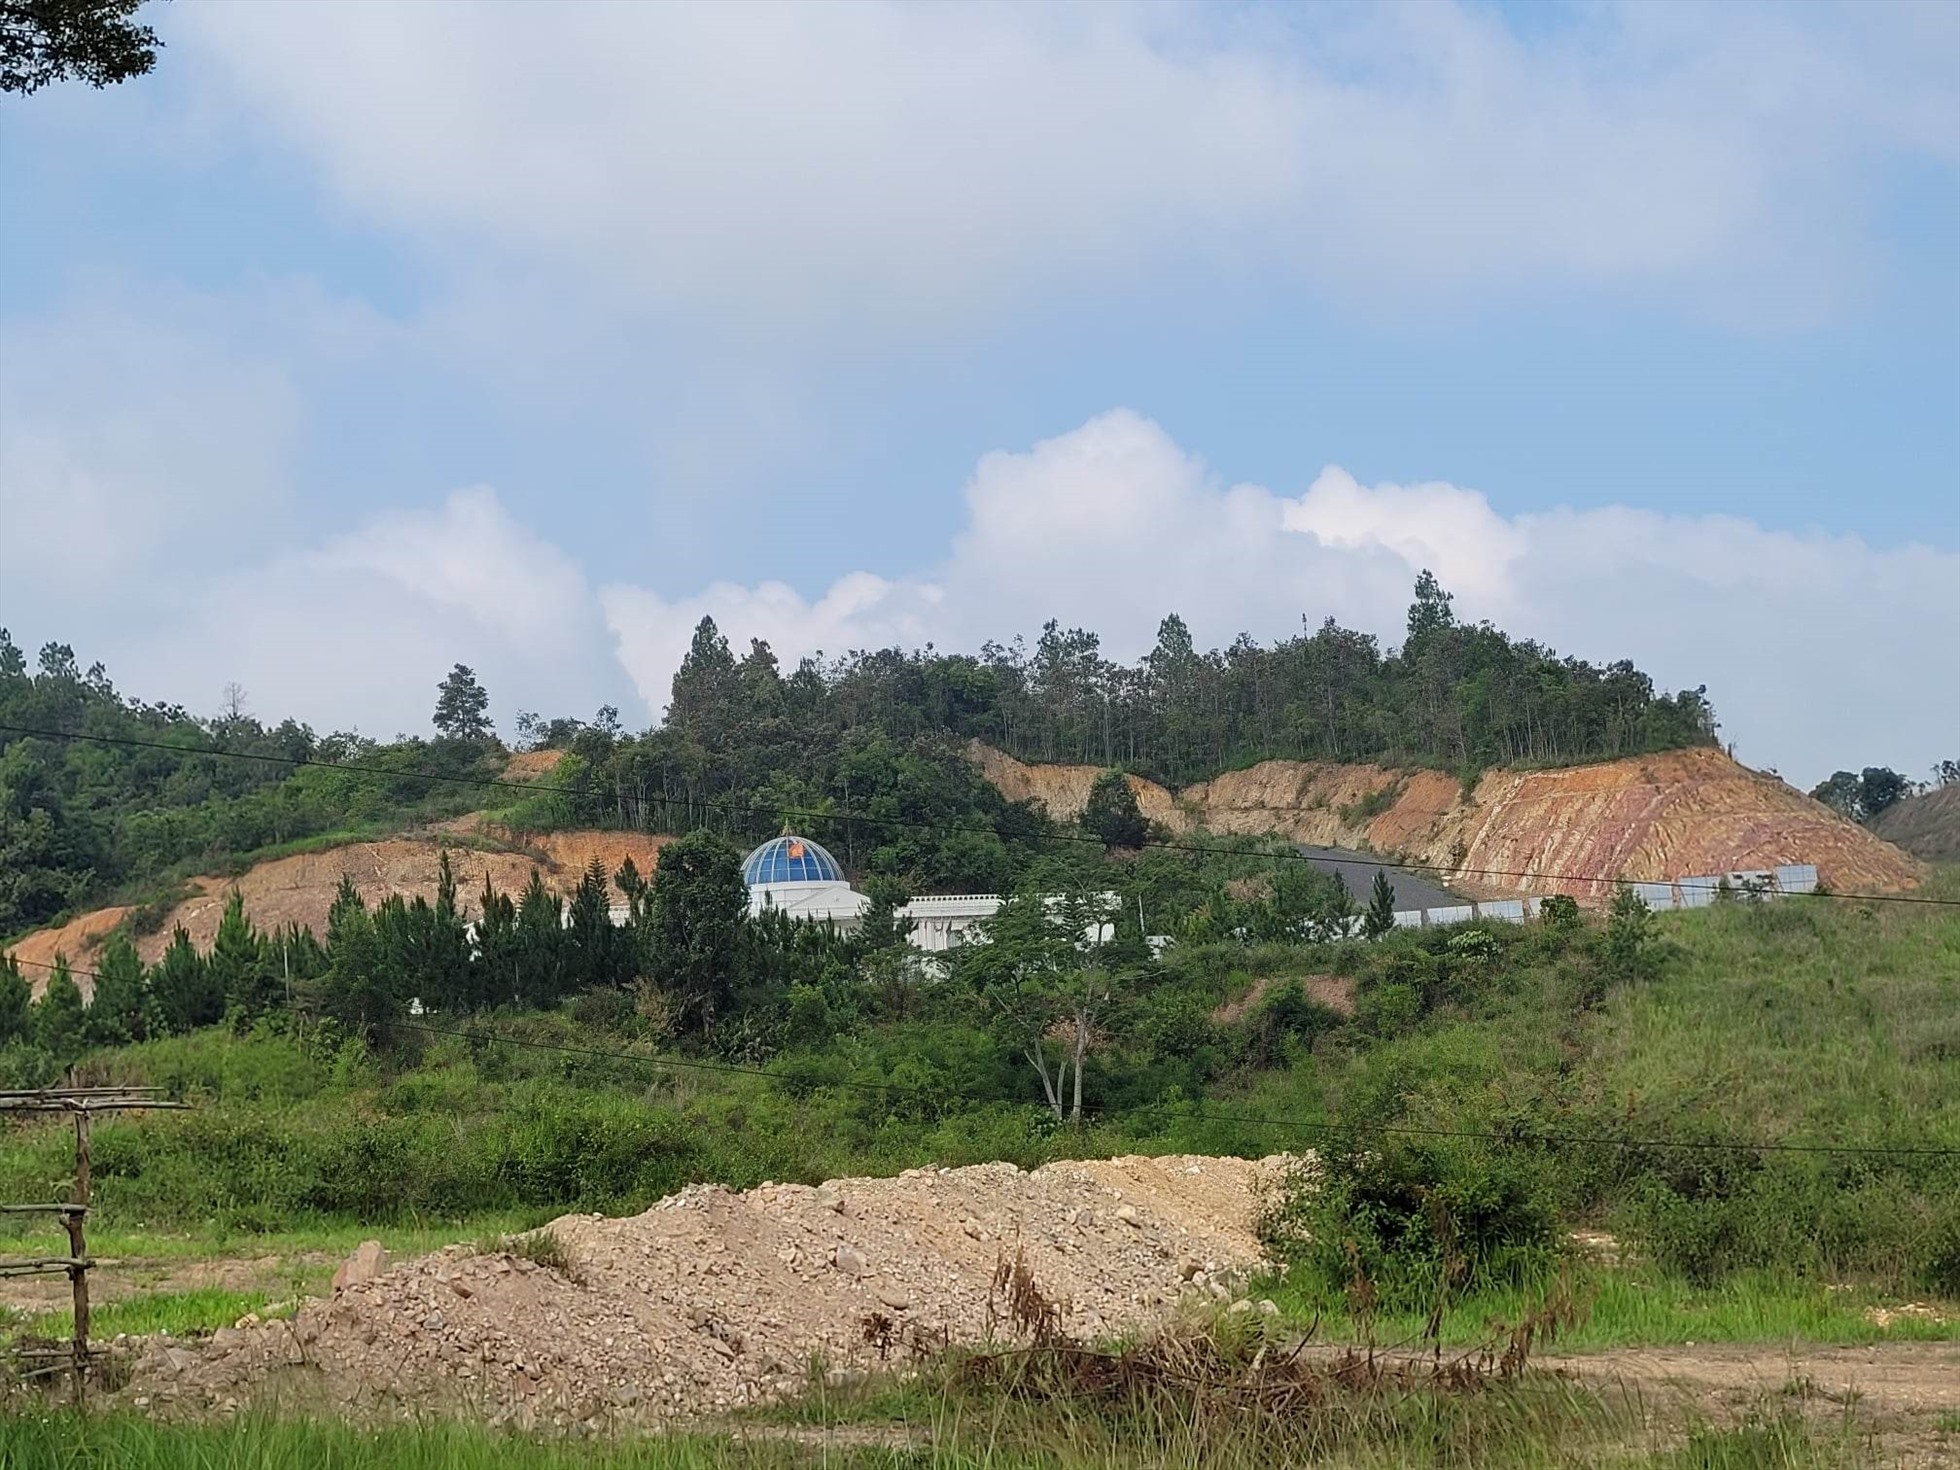 Vì để mất 257ha rừng nên Lâm Đồng đề nghị Công ty Sài Gòn Đại Ninh phải thực hiện bồi thường tài nguyên rừng. Ảnh: Hữu Long